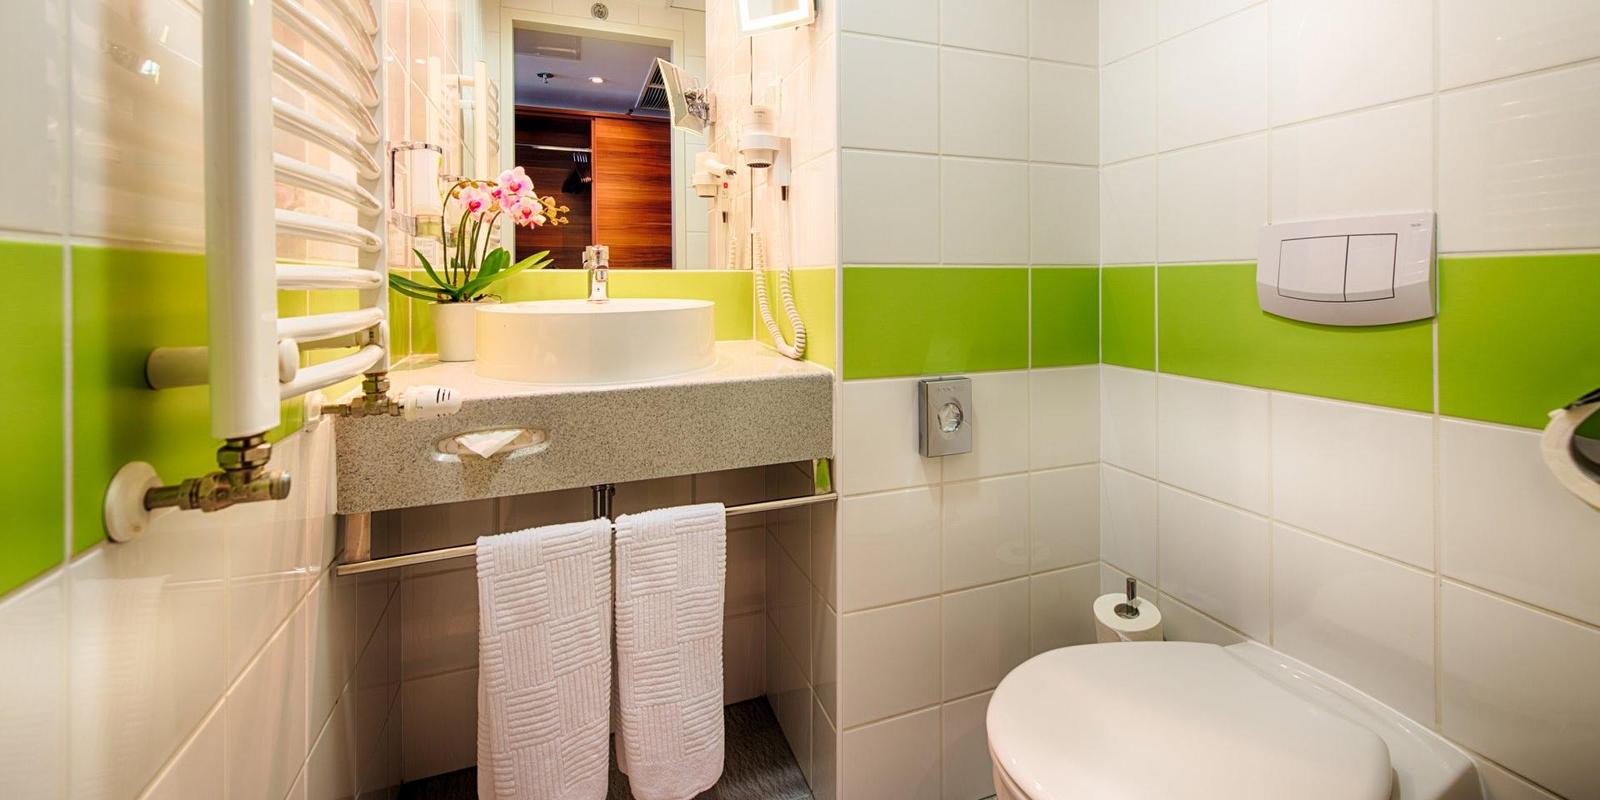 Achat hotel Budapest kupatilo.jpg